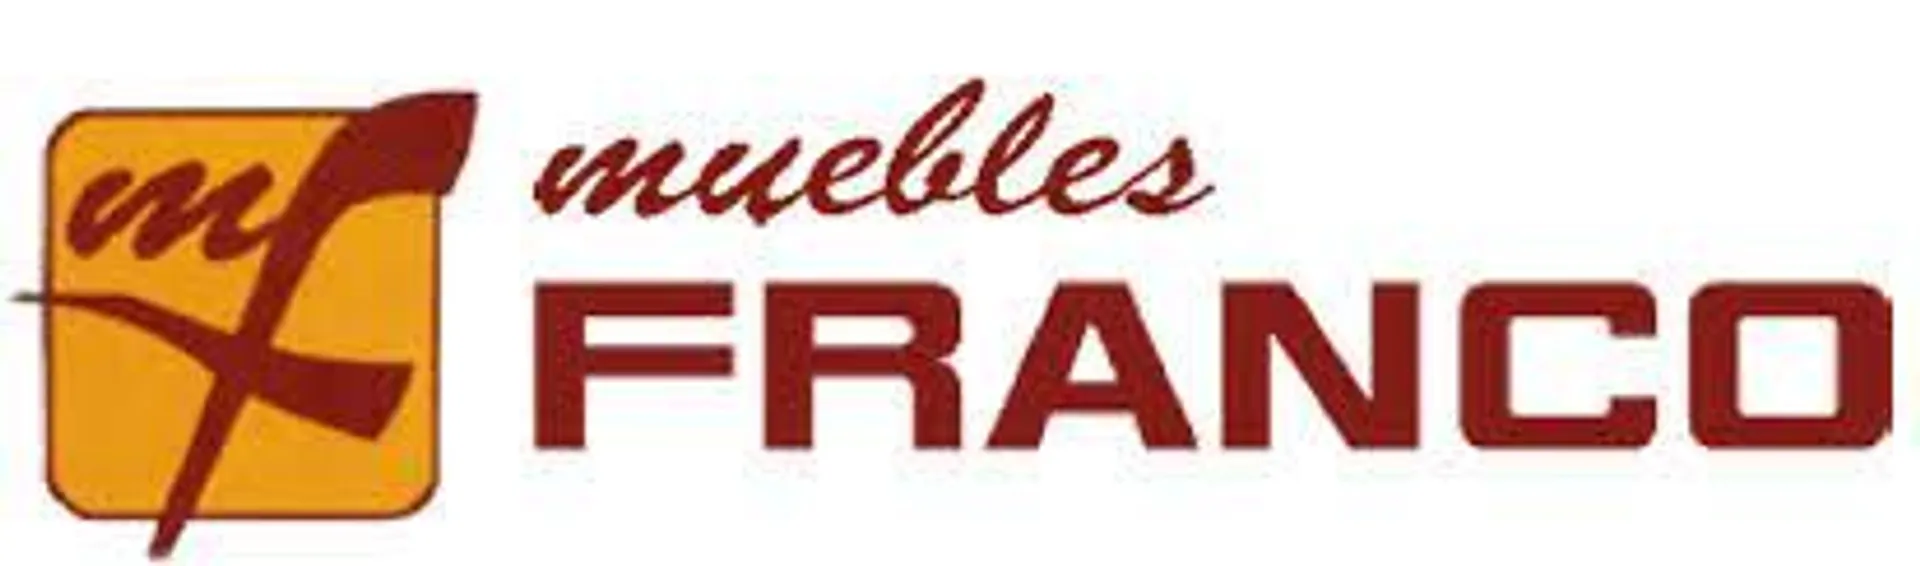 MUEBLES FRANCO logo de catálogo